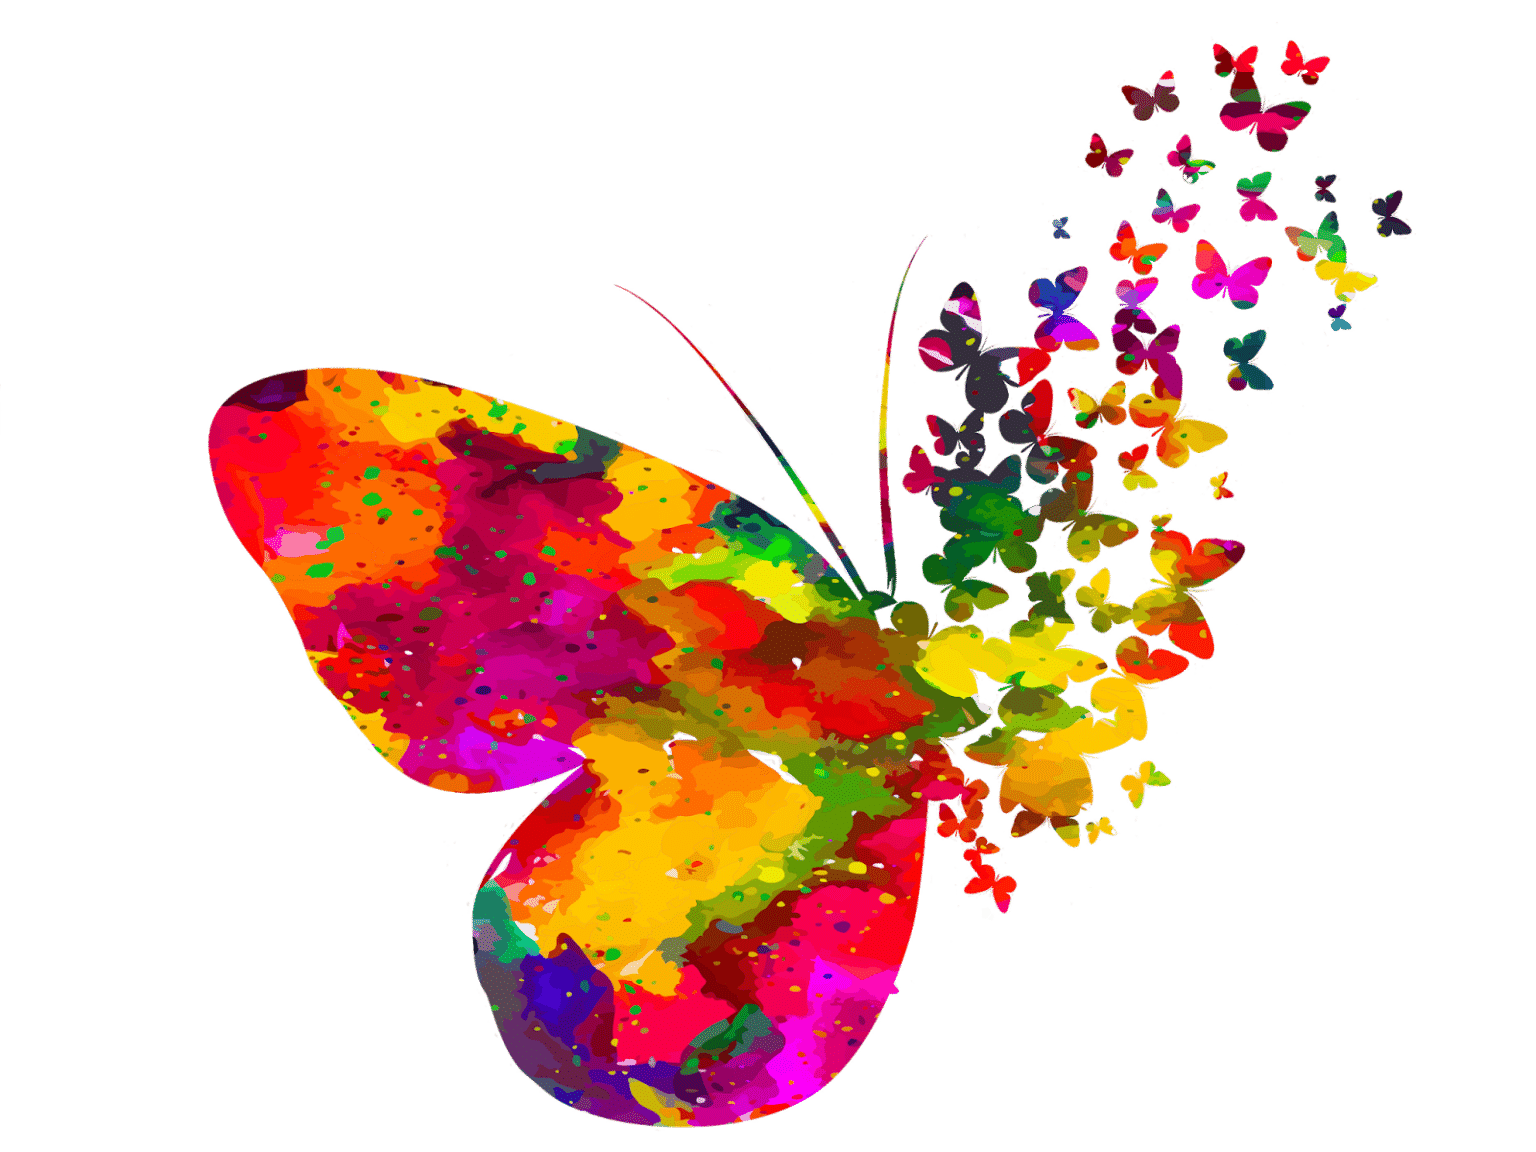 Papillon multicolore sur fond blanc. Son aile droite se décompose en milliers de papillons multicolores qui s'envolent vers le haut droit.